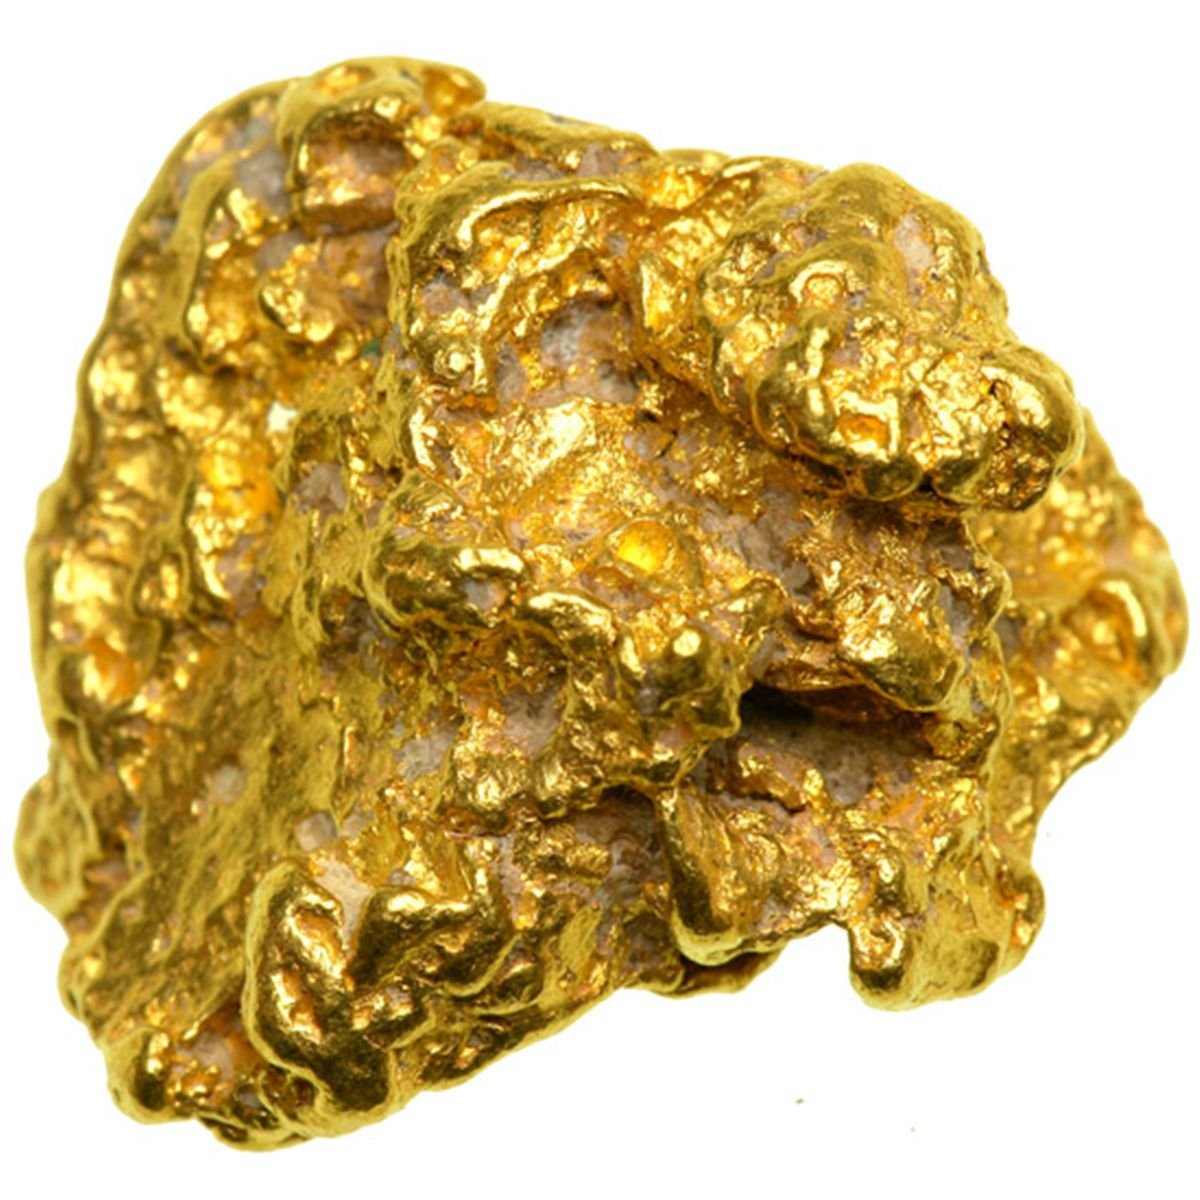 Благородные руды. Самородное золото минерал. Золото Аурум химия. Золотые слитки и самородки. Самородные минералы самородок золота.